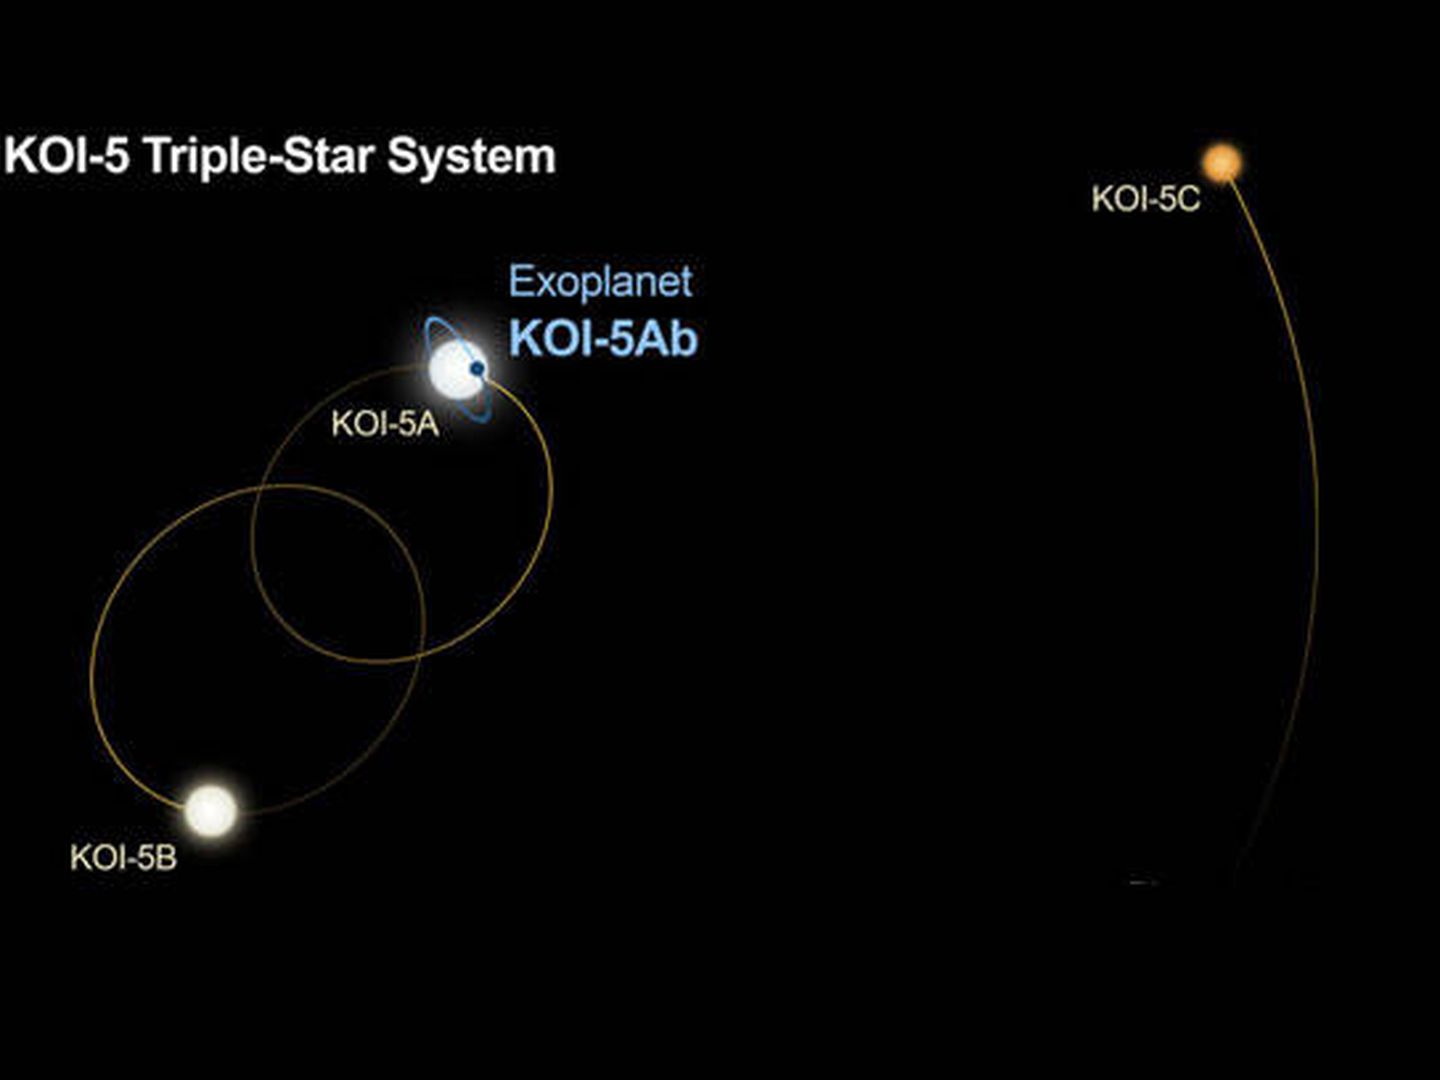 Este es el esquema de tres estrellas y su influencia en el KOI-5Ab